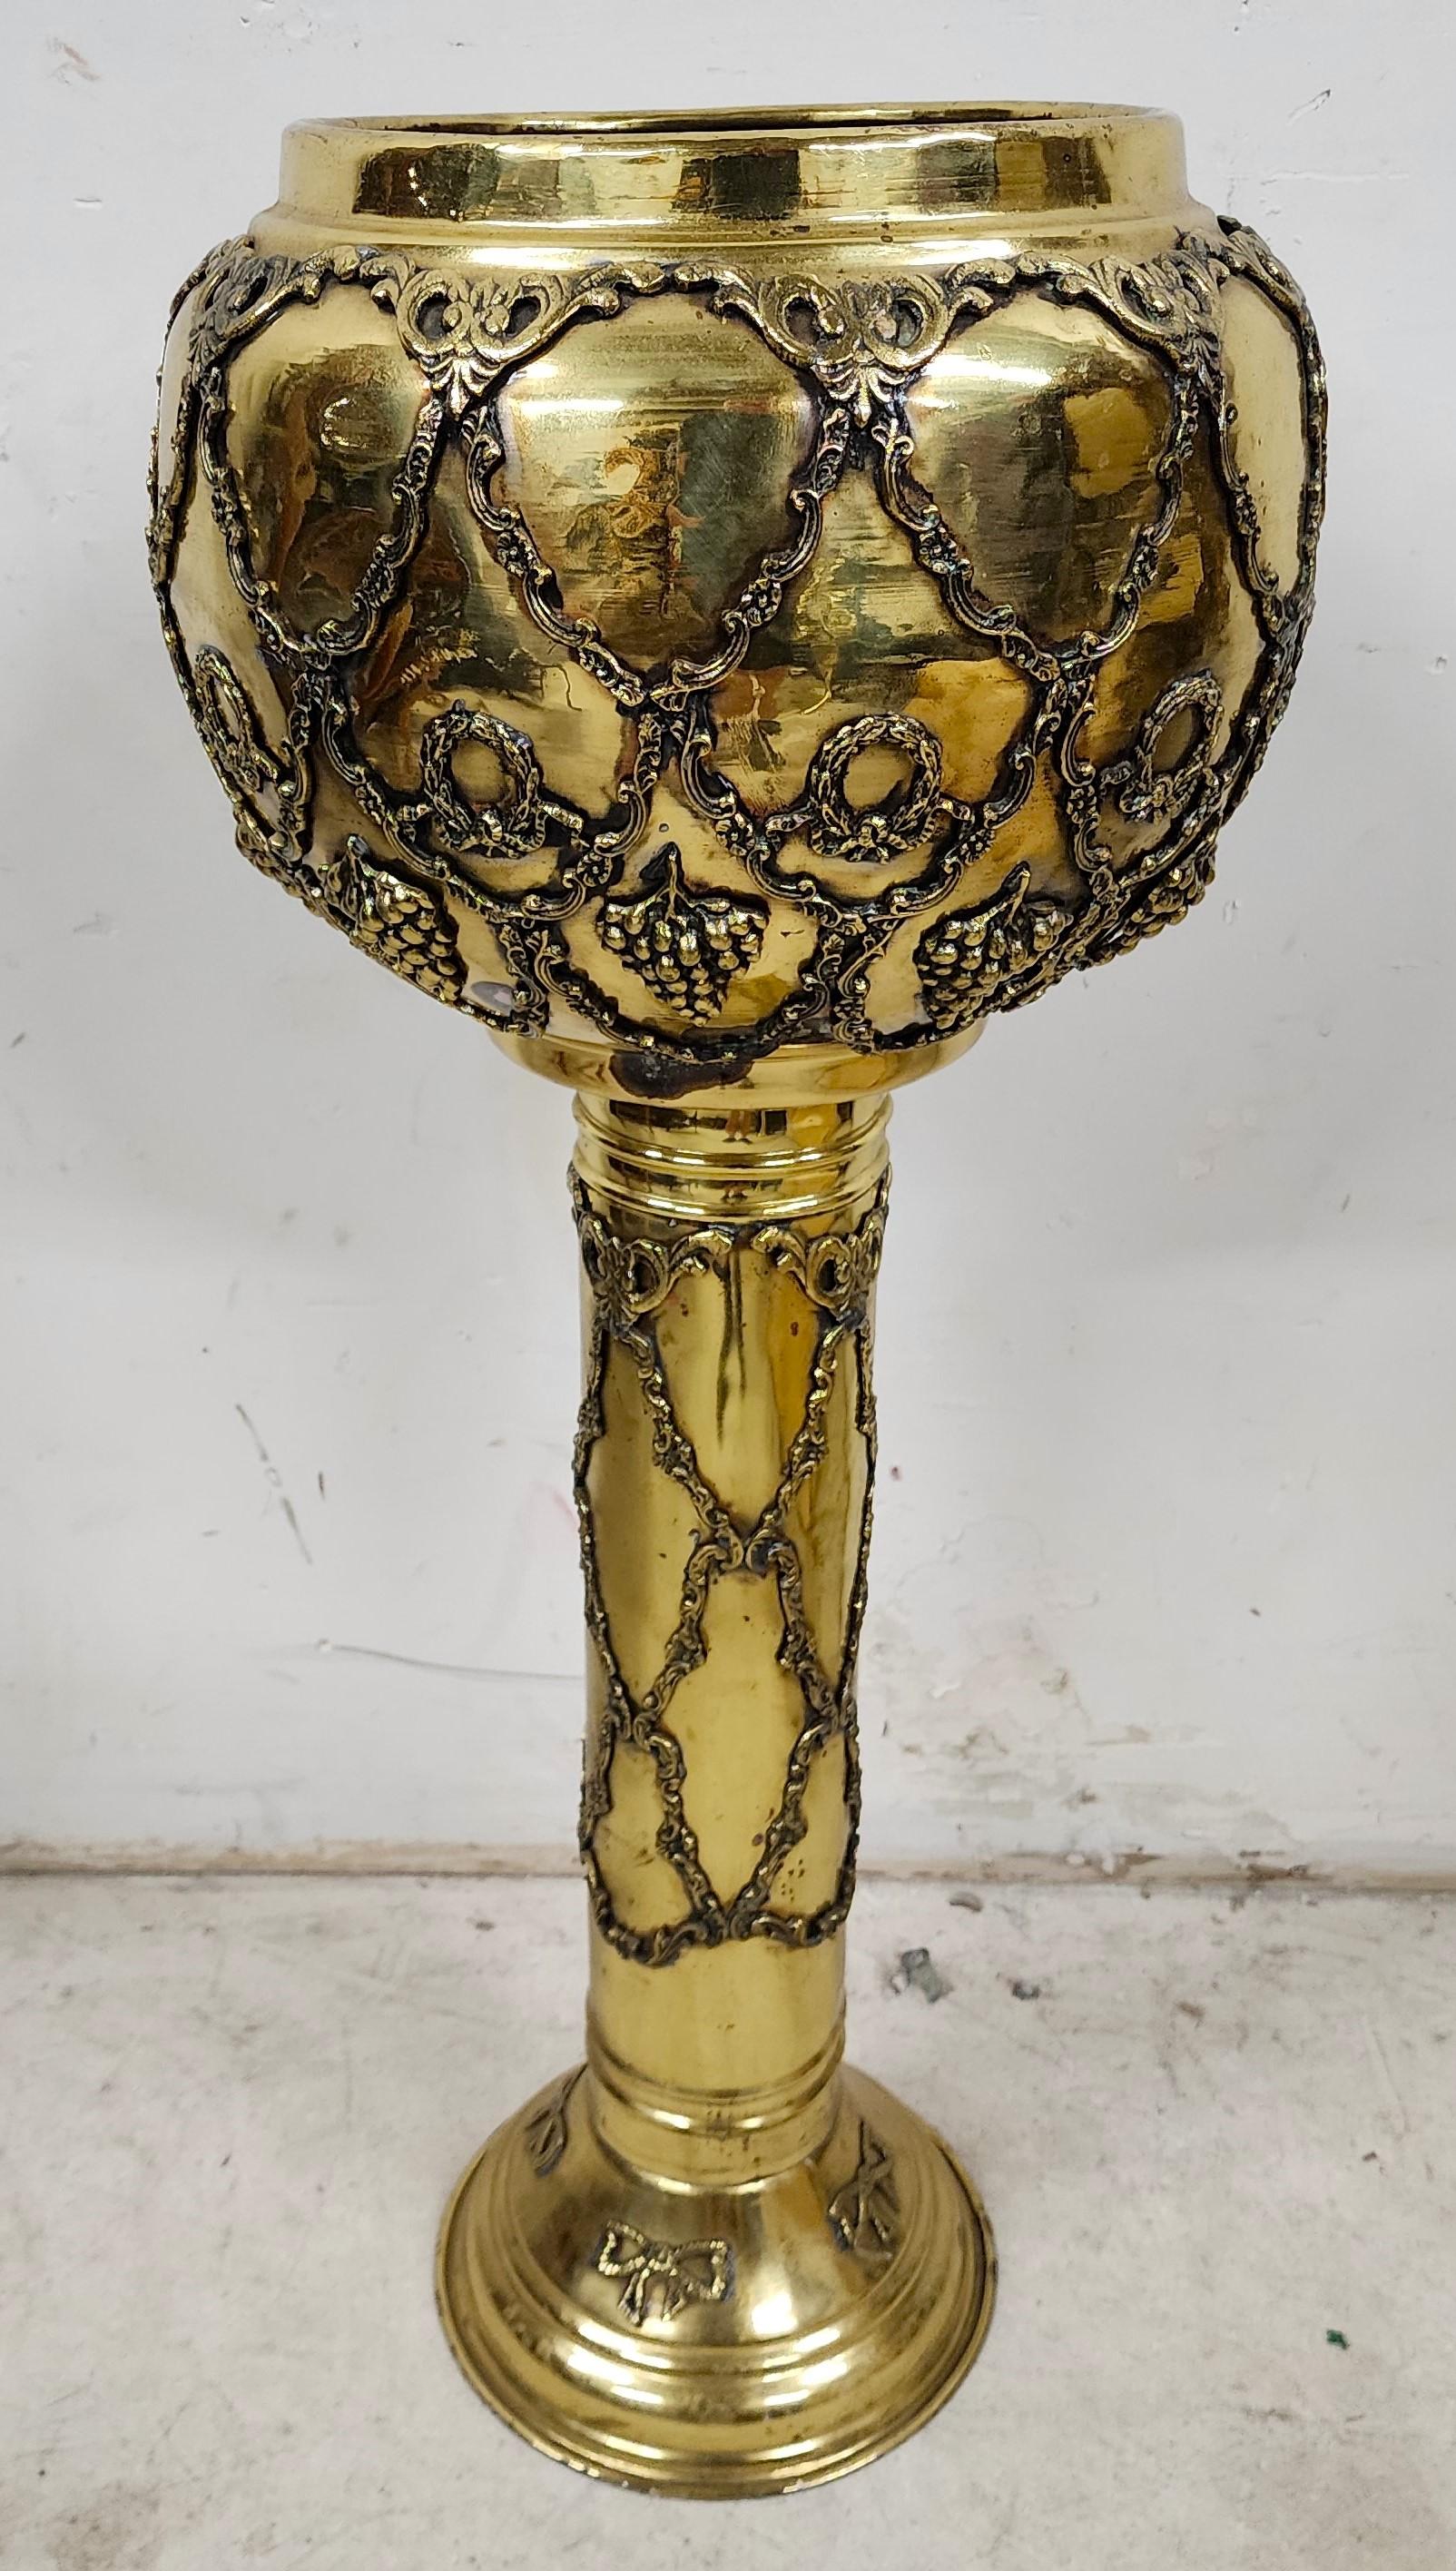 Antique Ornate Pedestal Brass Planter Stands, Set of 2 For Sale 10